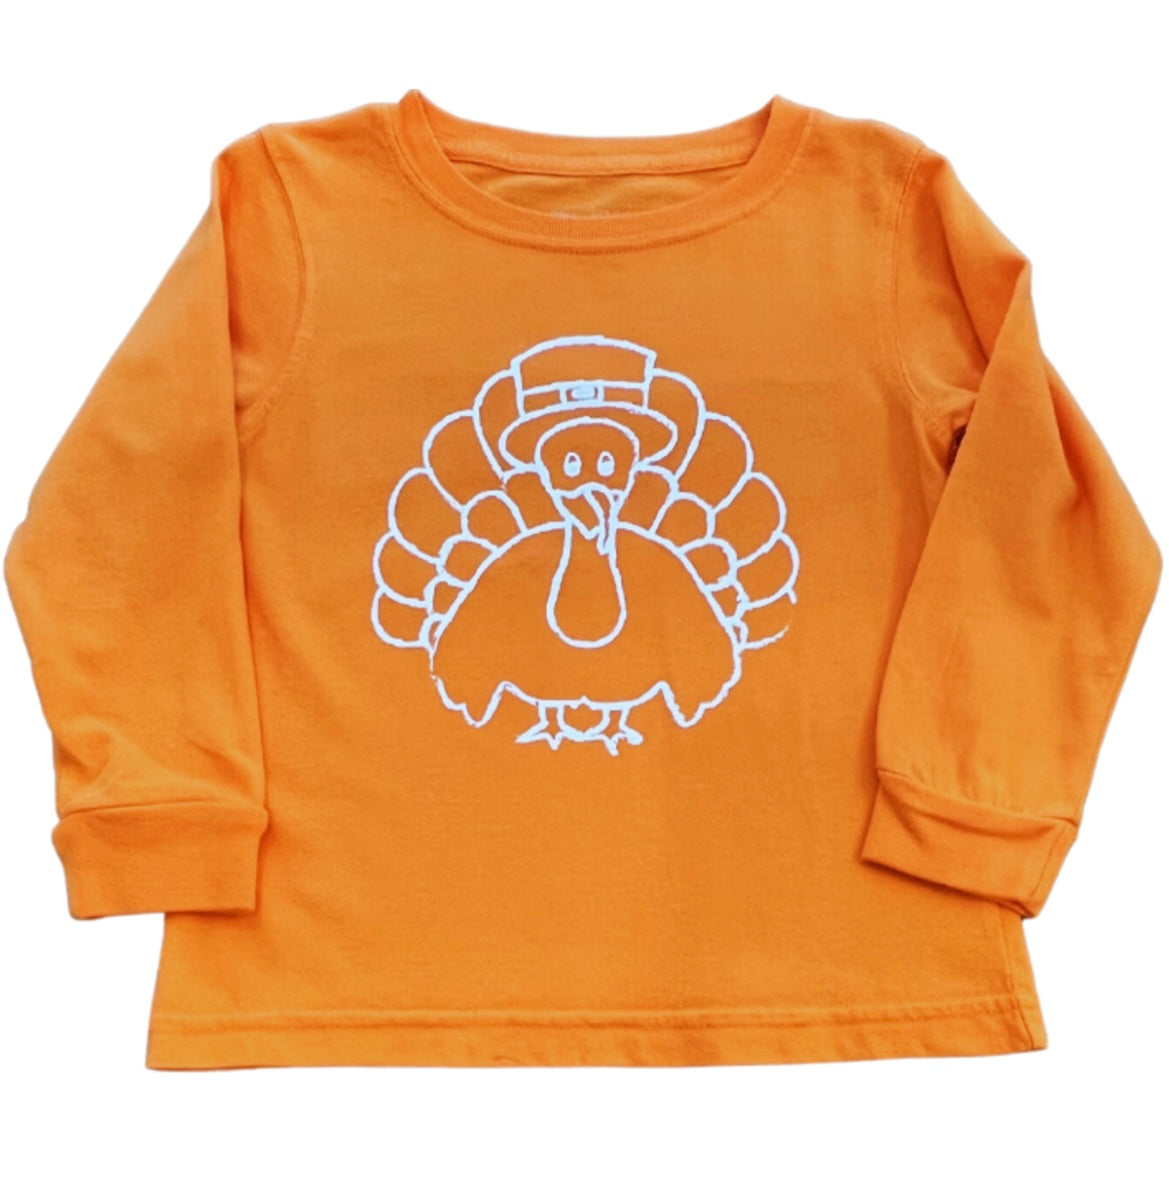 Orange Turkey T-Shirt L/S